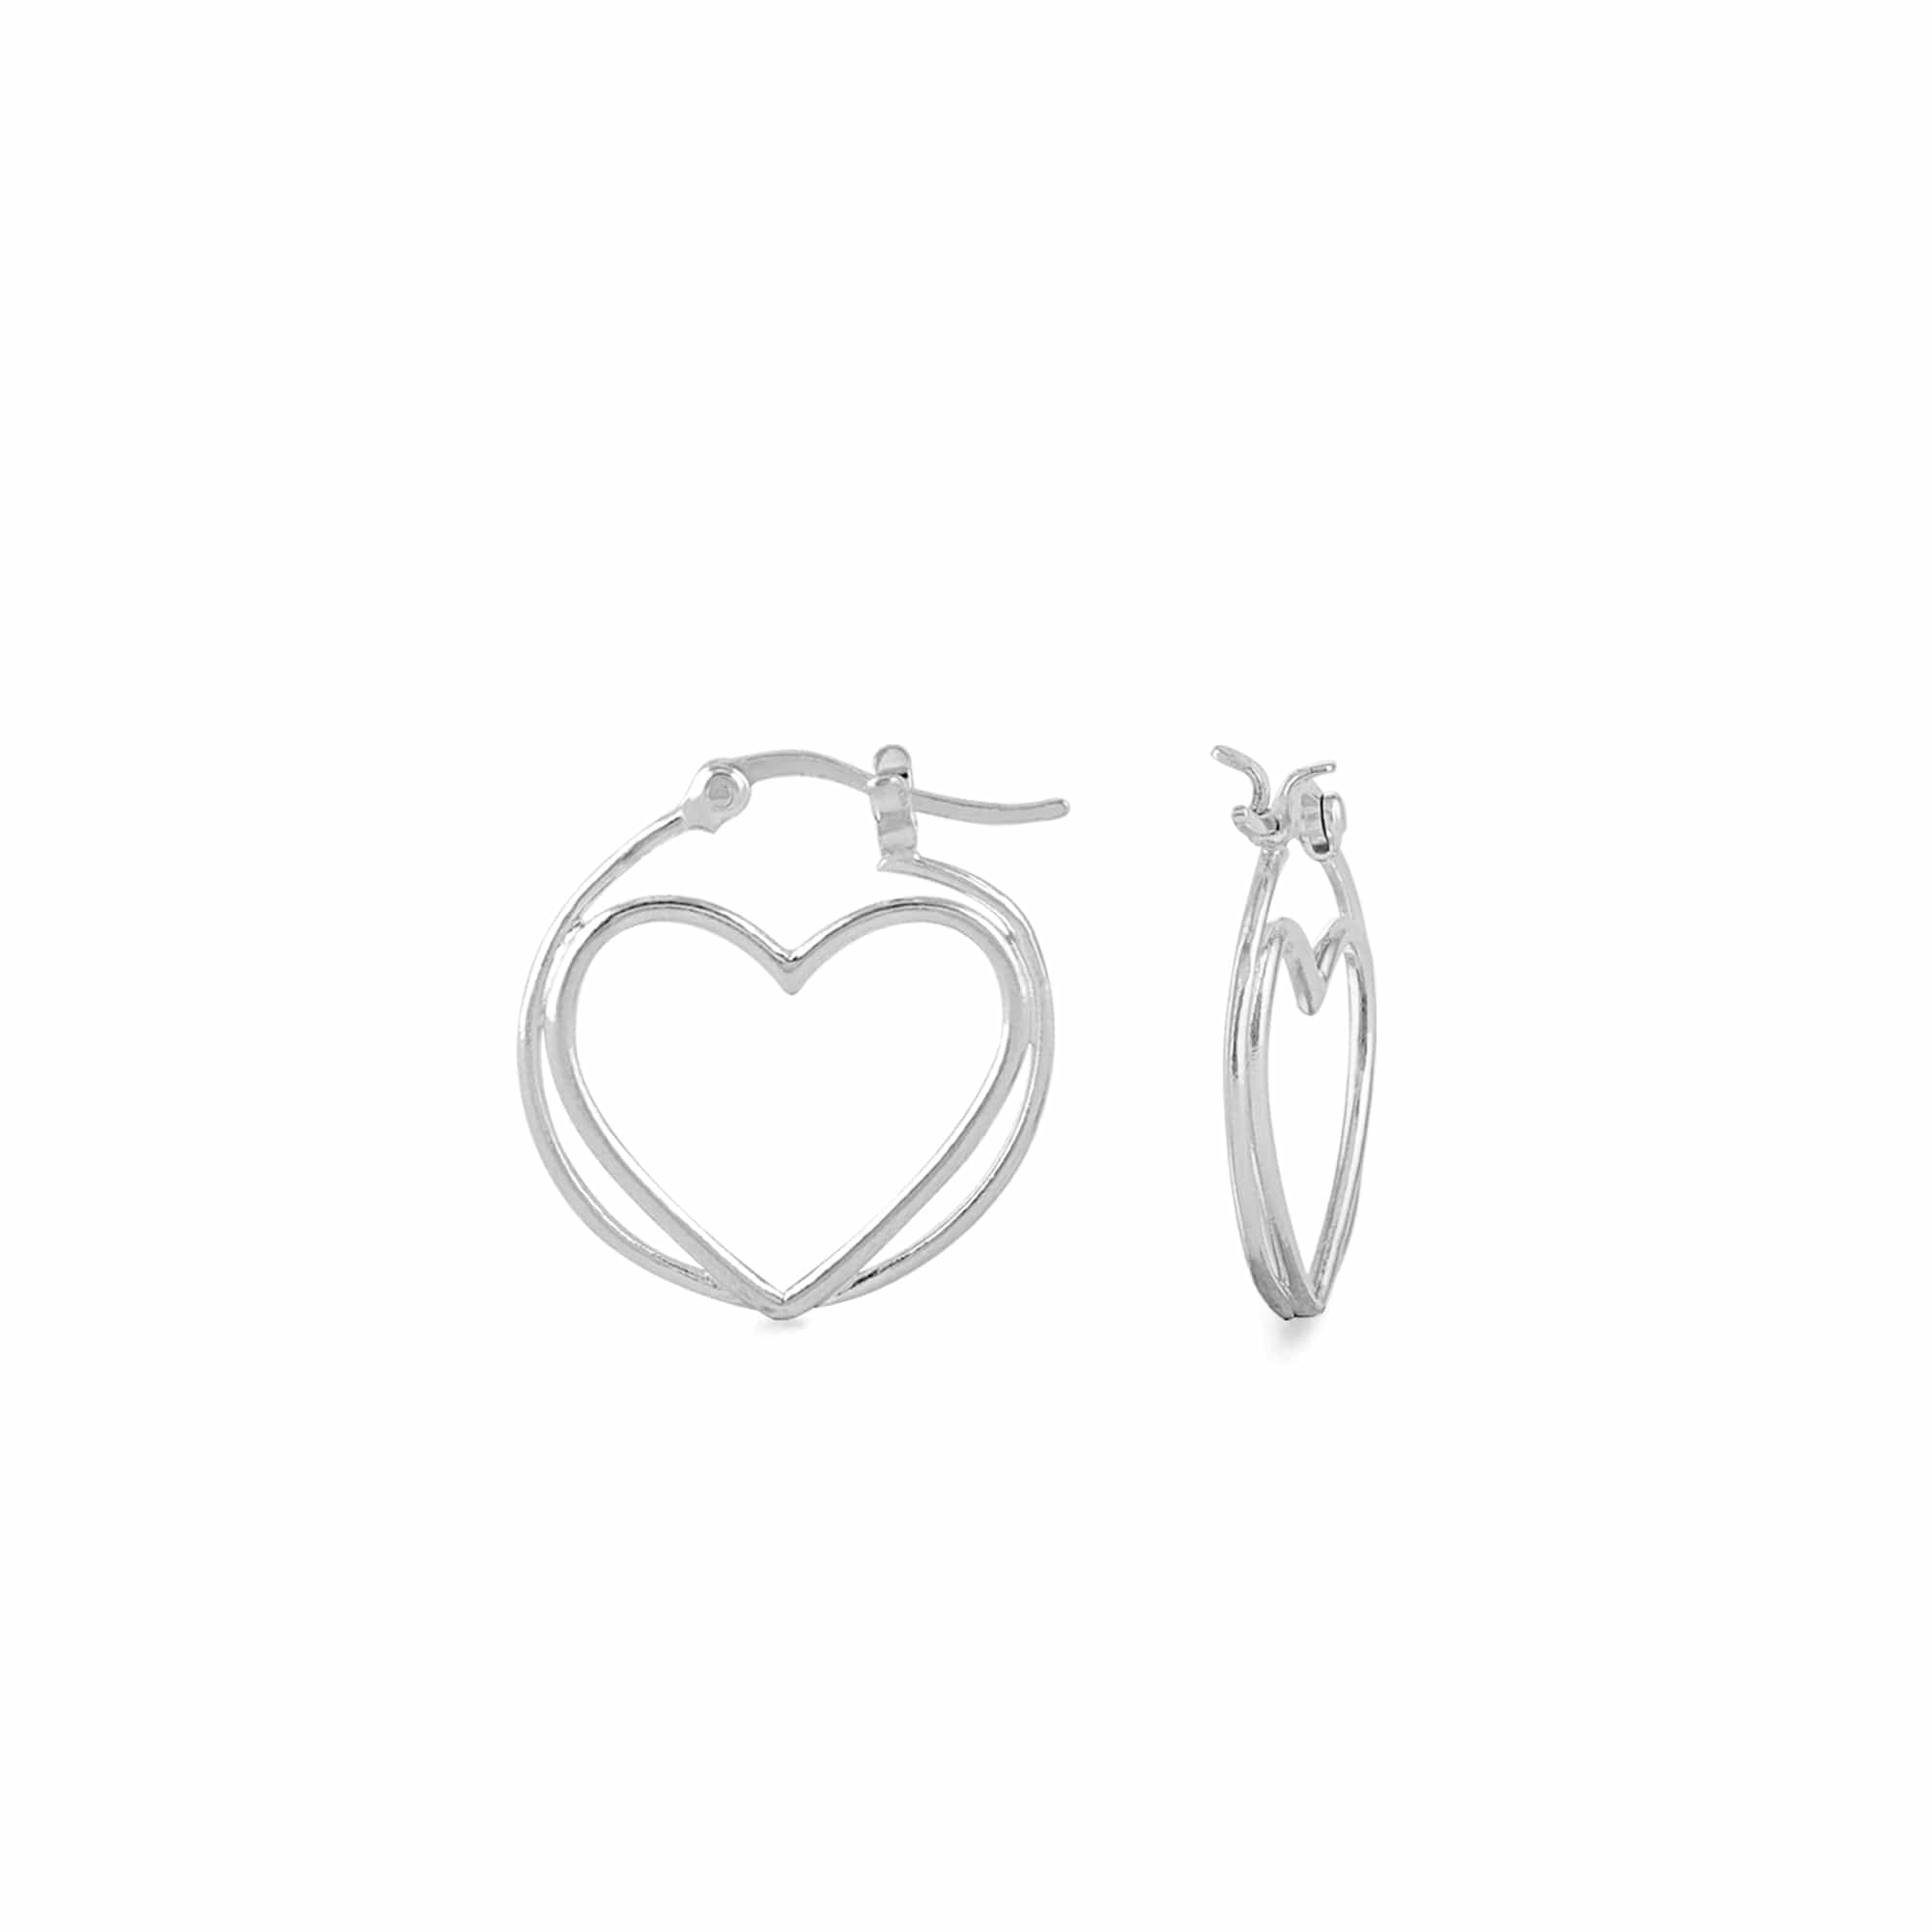 Boma Jewelry Earrings Sterling Silver Double Heart Hoops